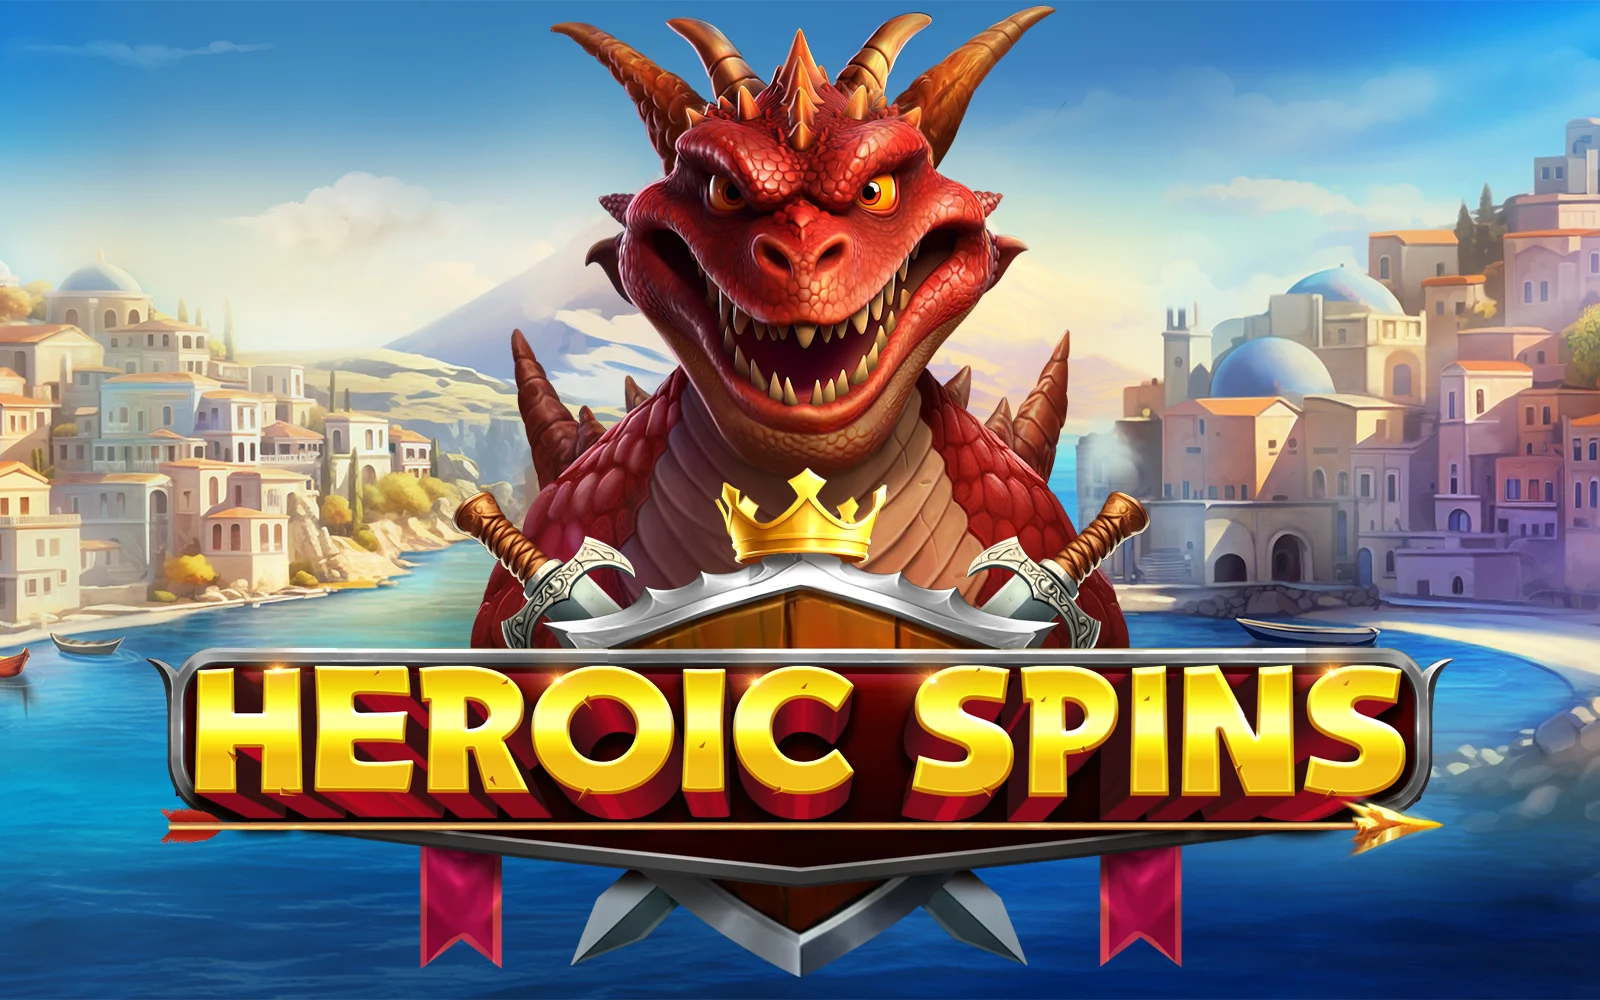 Jouer à Heroic Spins sur le casino en ligne Starcasino.be